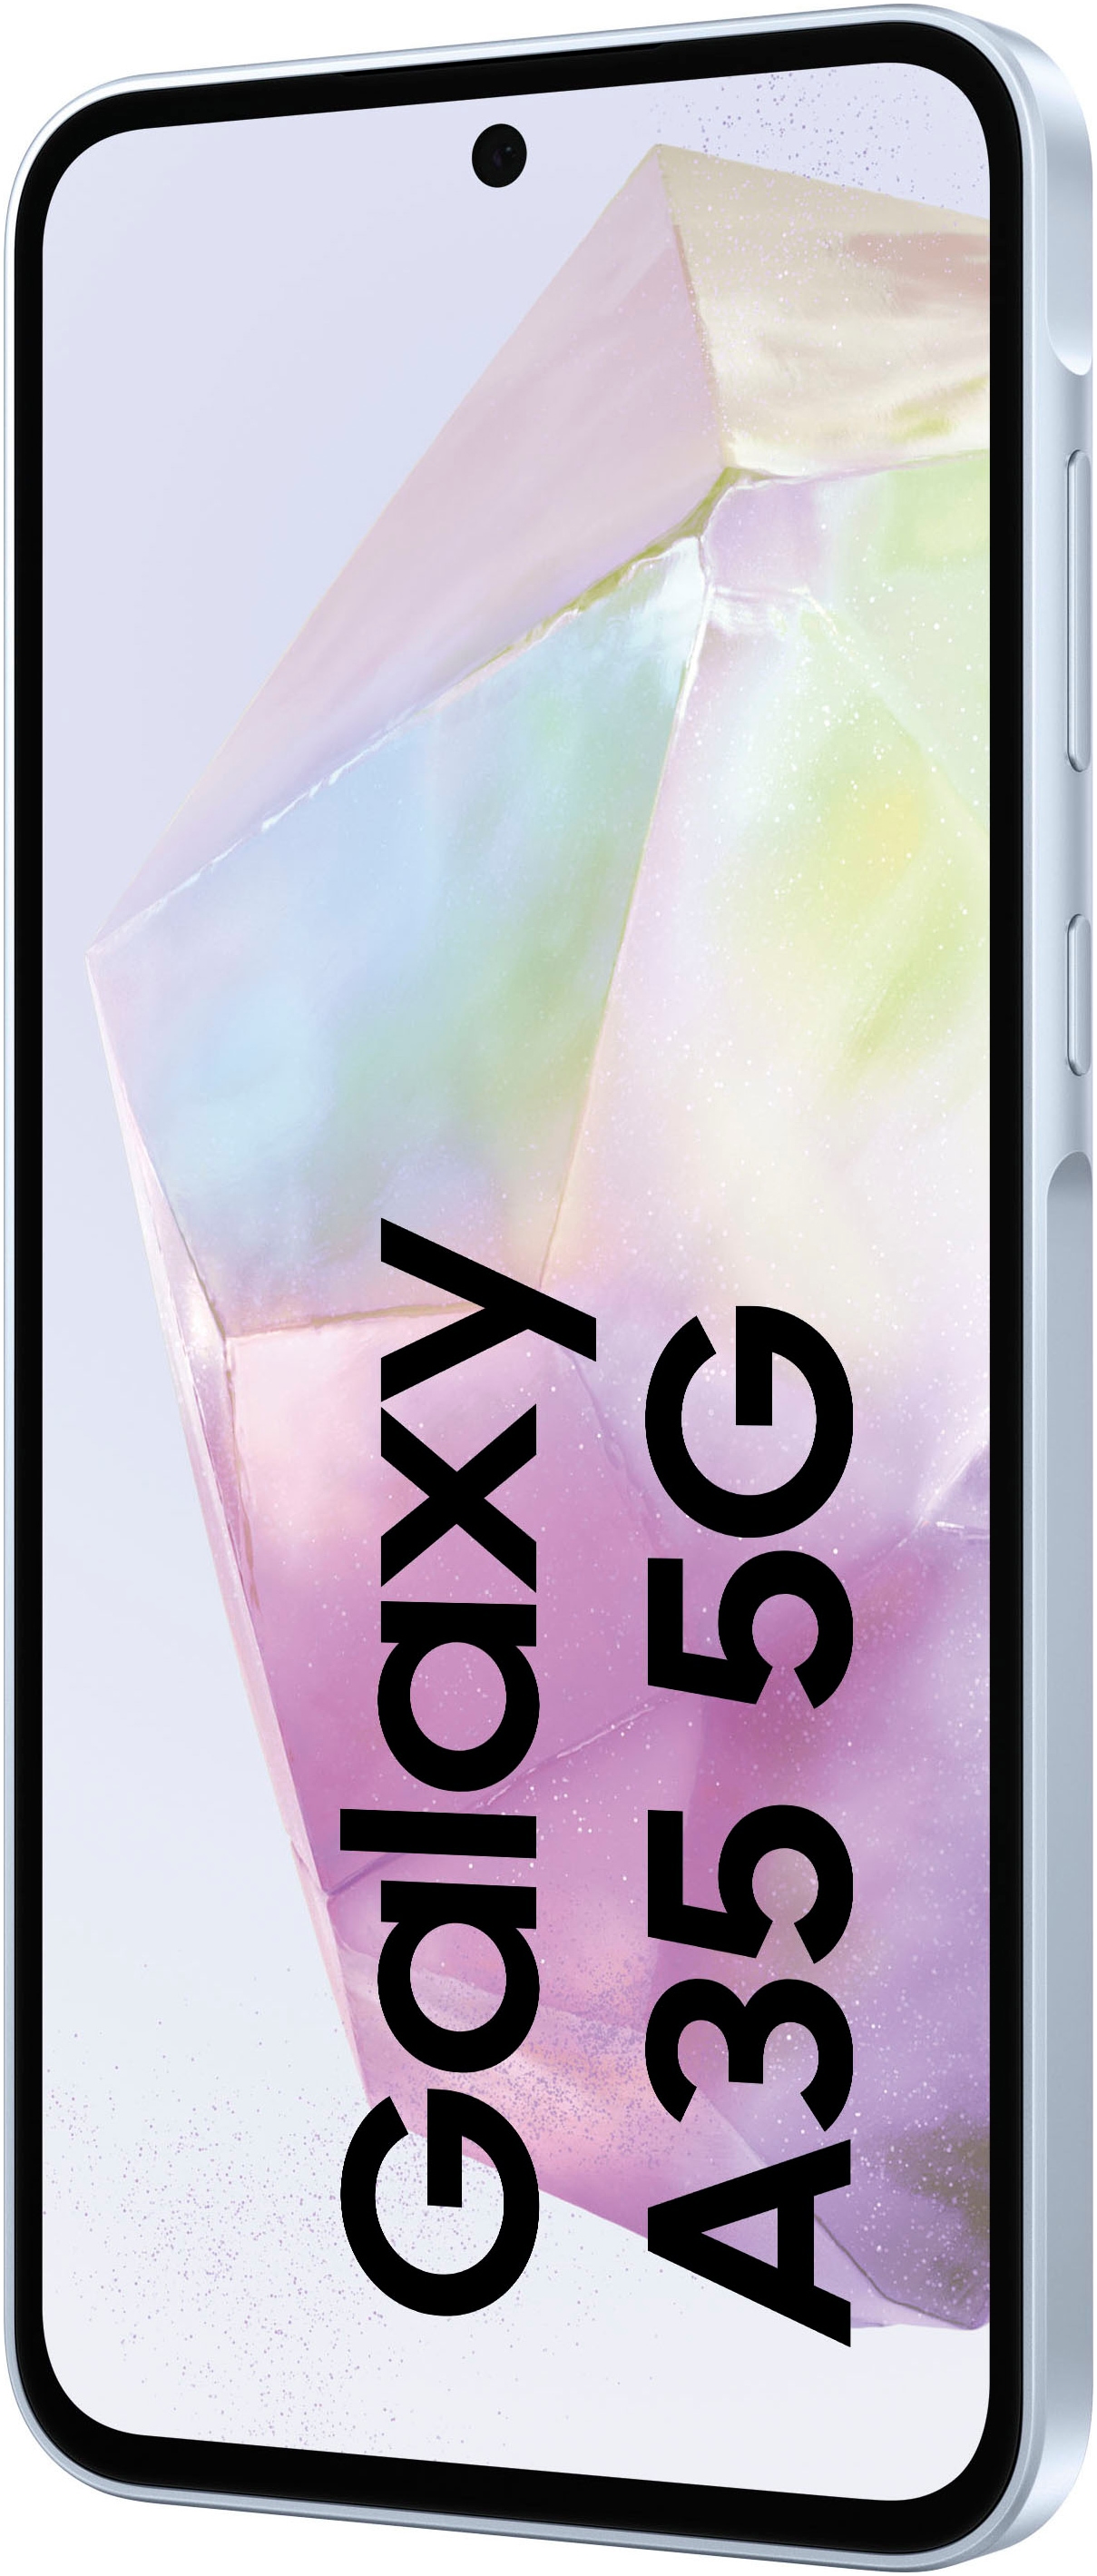 Samsung Smartphone »Galaxy A35 5G 128GB«, Eisblau, 16,83 cm/6,6 Zoll, 128 GB Speicherplatz, 50 MP Kamera